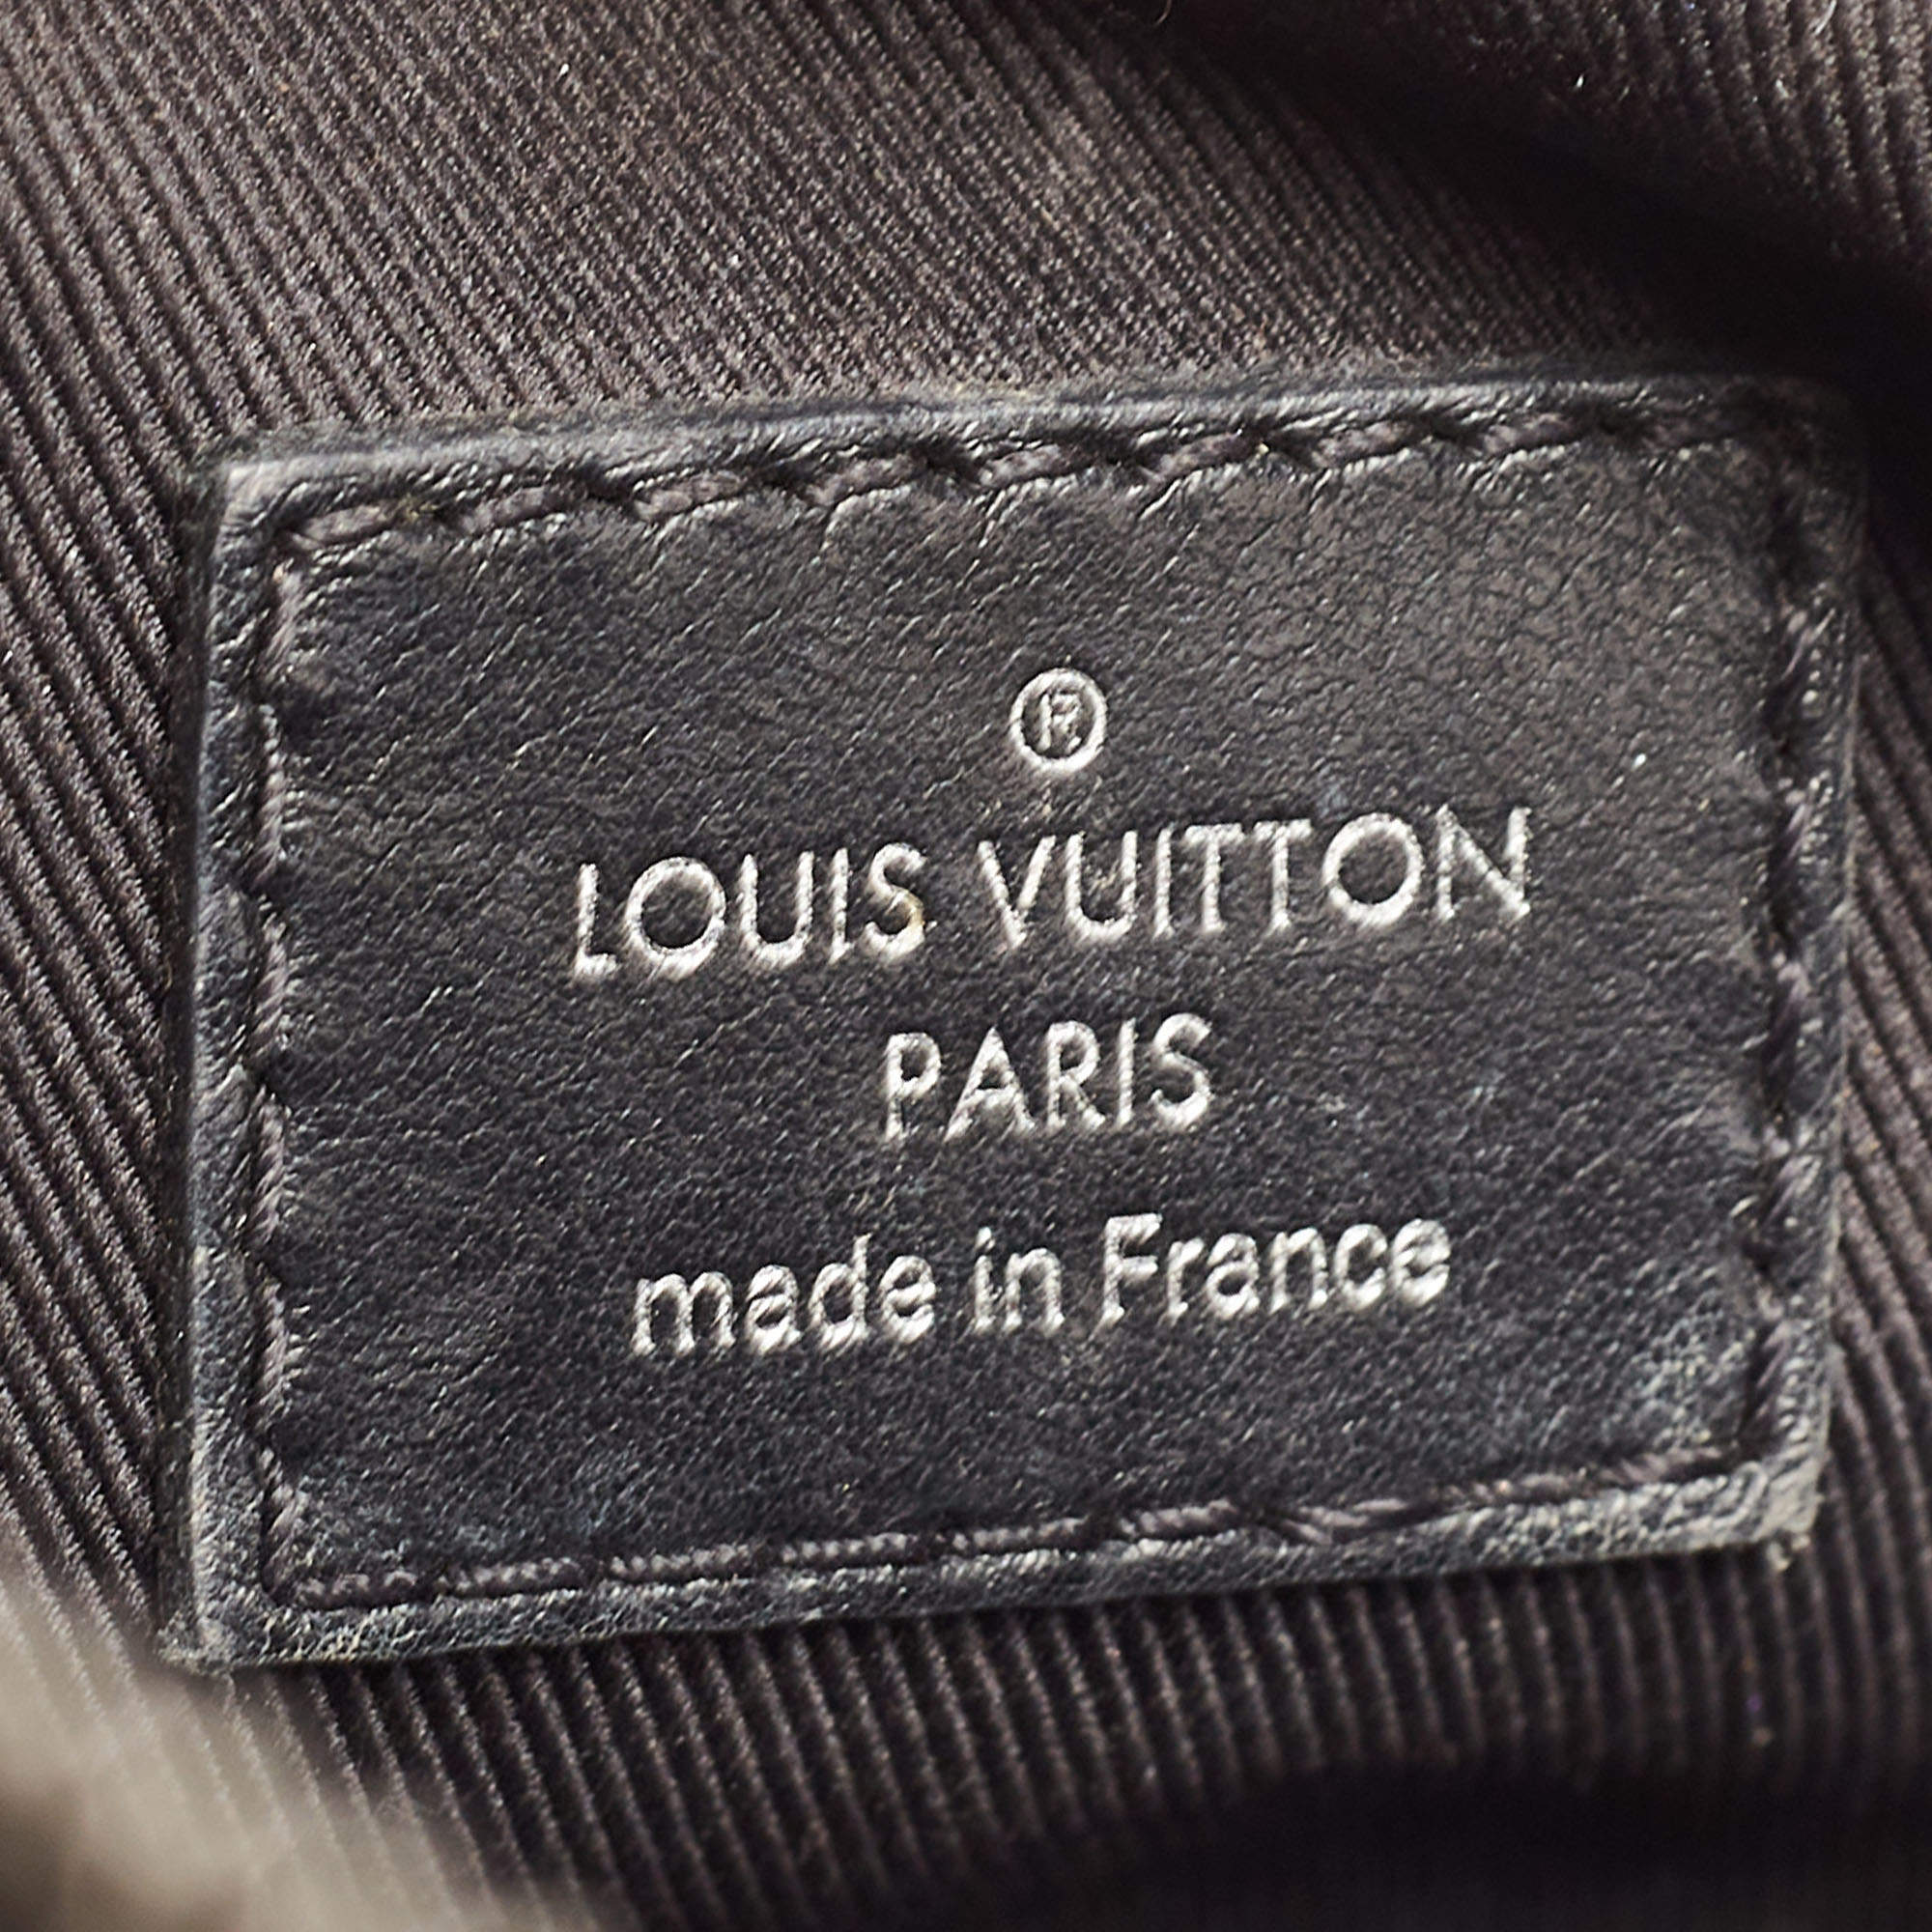 Louis Vuitton Soft Trunk Bag Monogram Eclipse Canvas Black 21794062